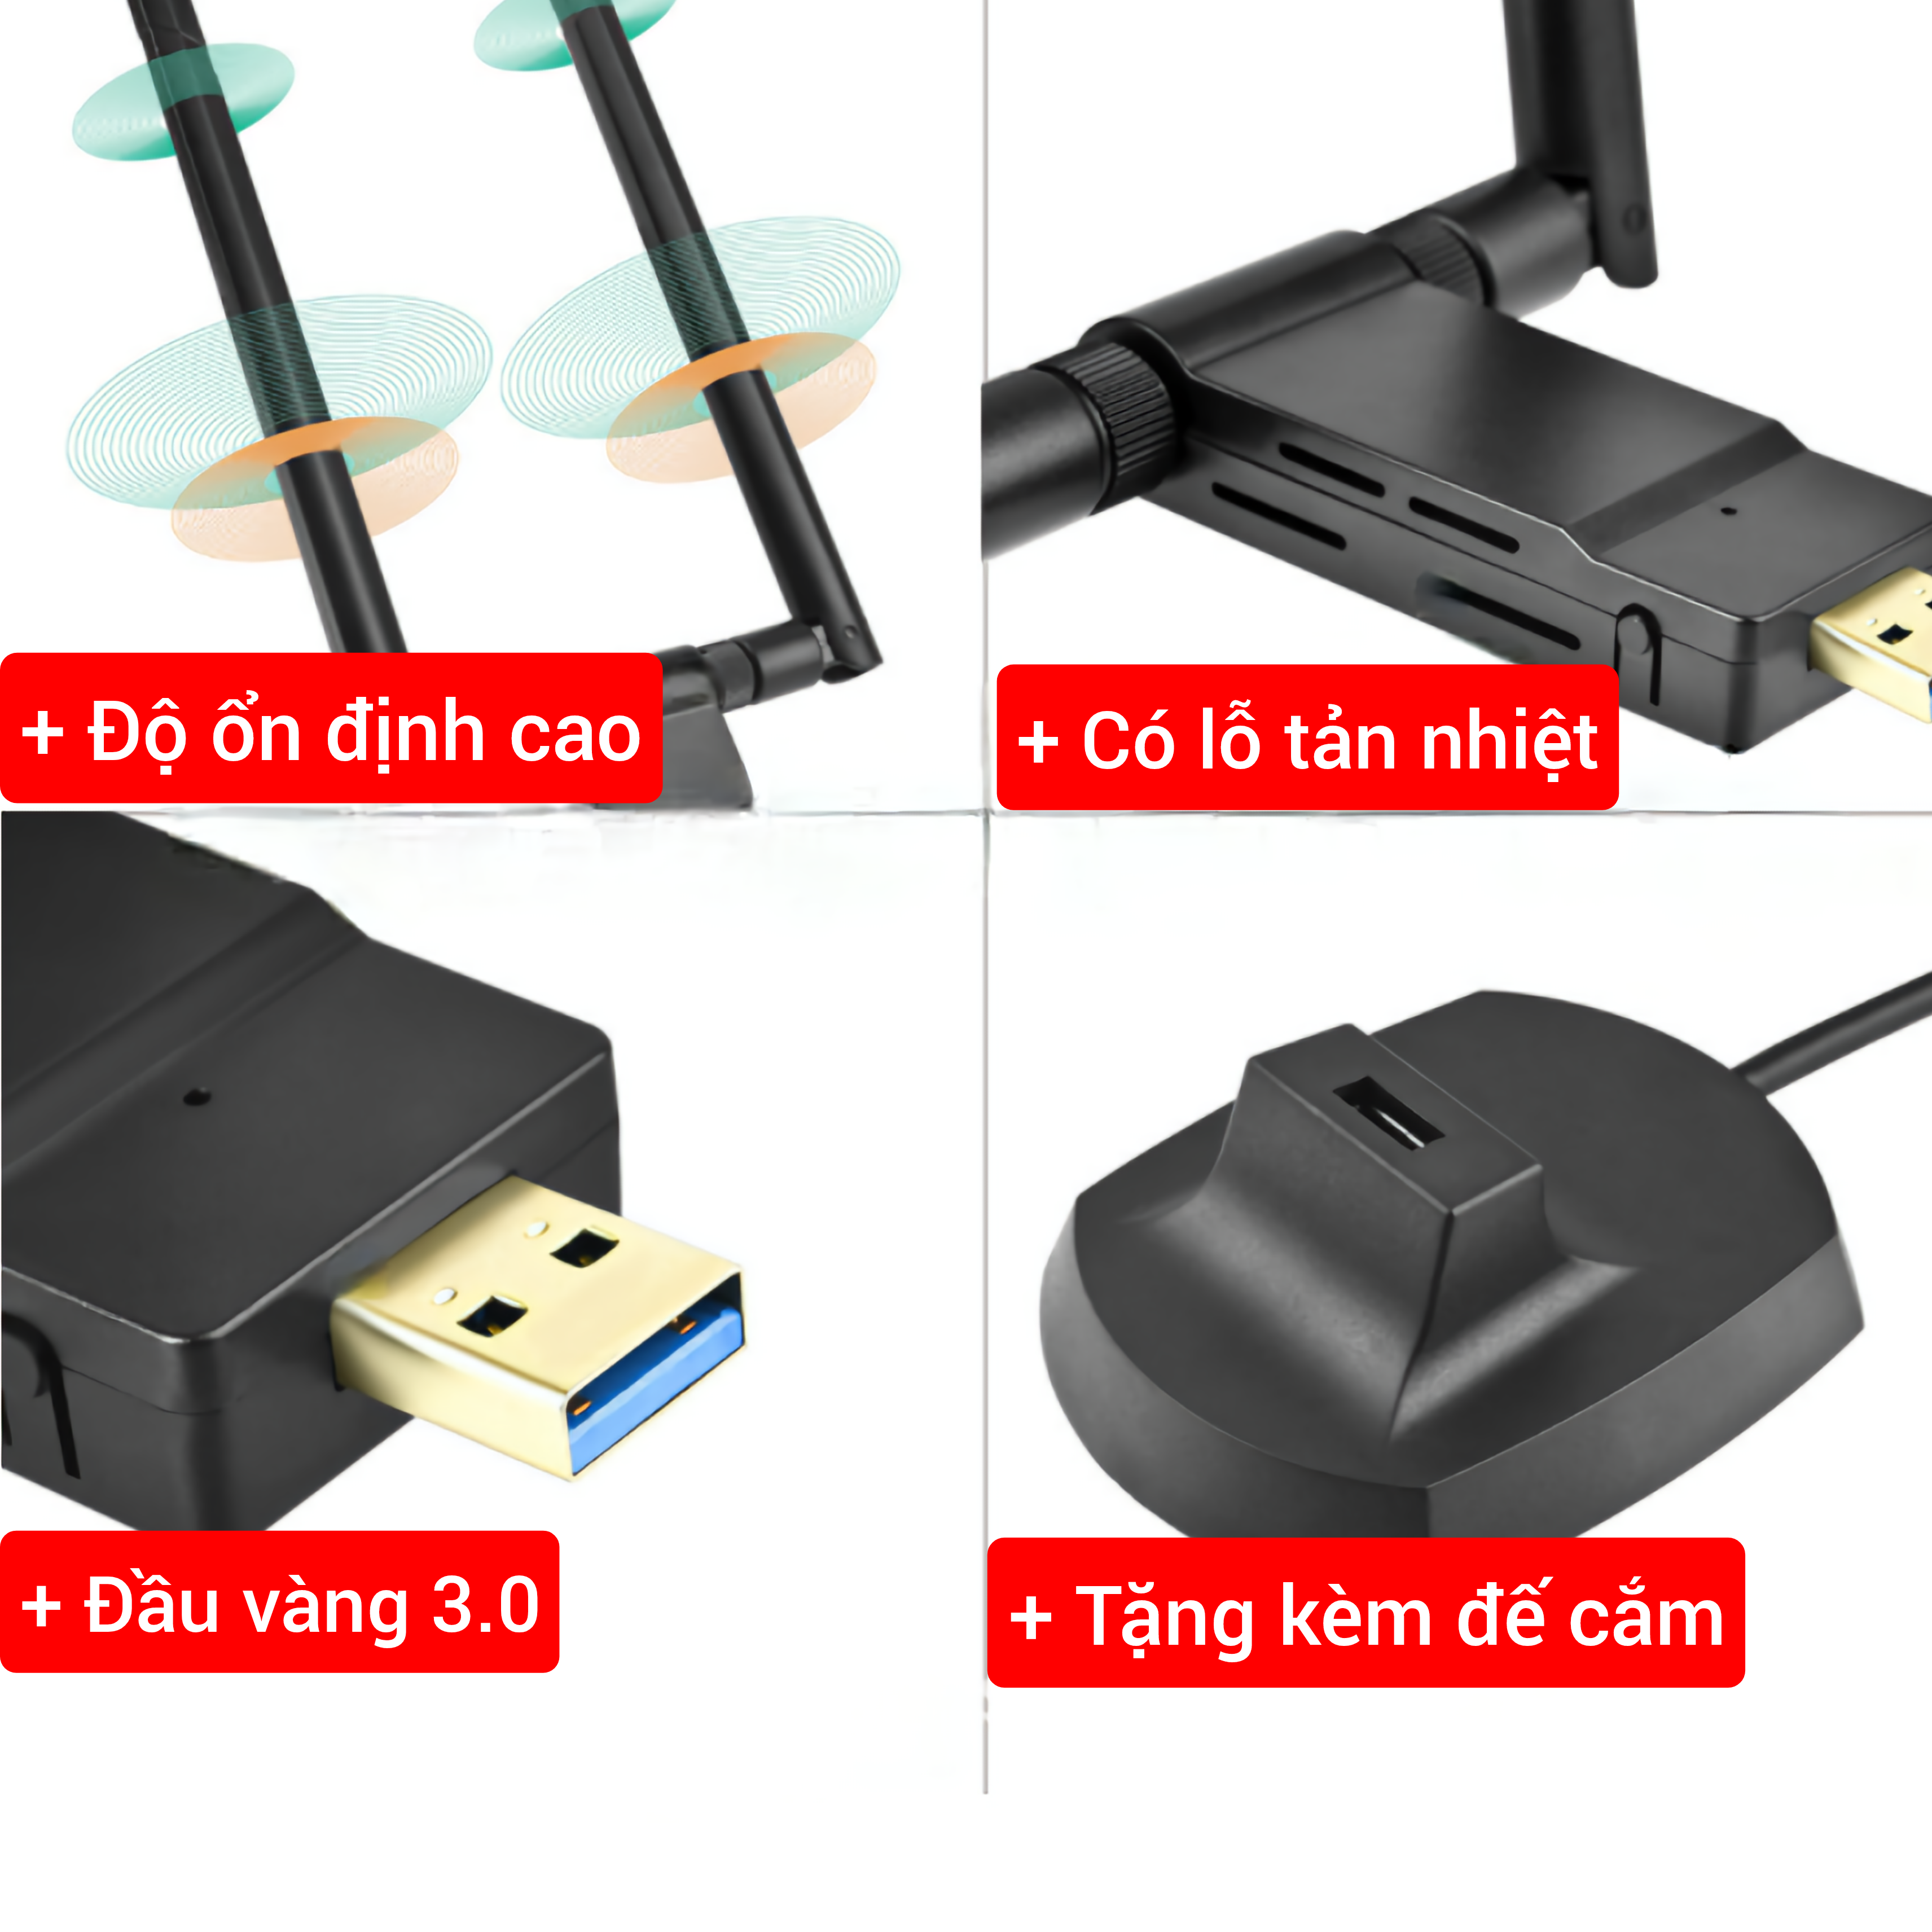 Nâng cấp WiFi 5G dễ dàng với USB WIFI 3.0 siêu tốc 1750Mbps bắt 5GHz cho máy bàn PC laptop - Nota 1750Mb Anten Đôi Pro